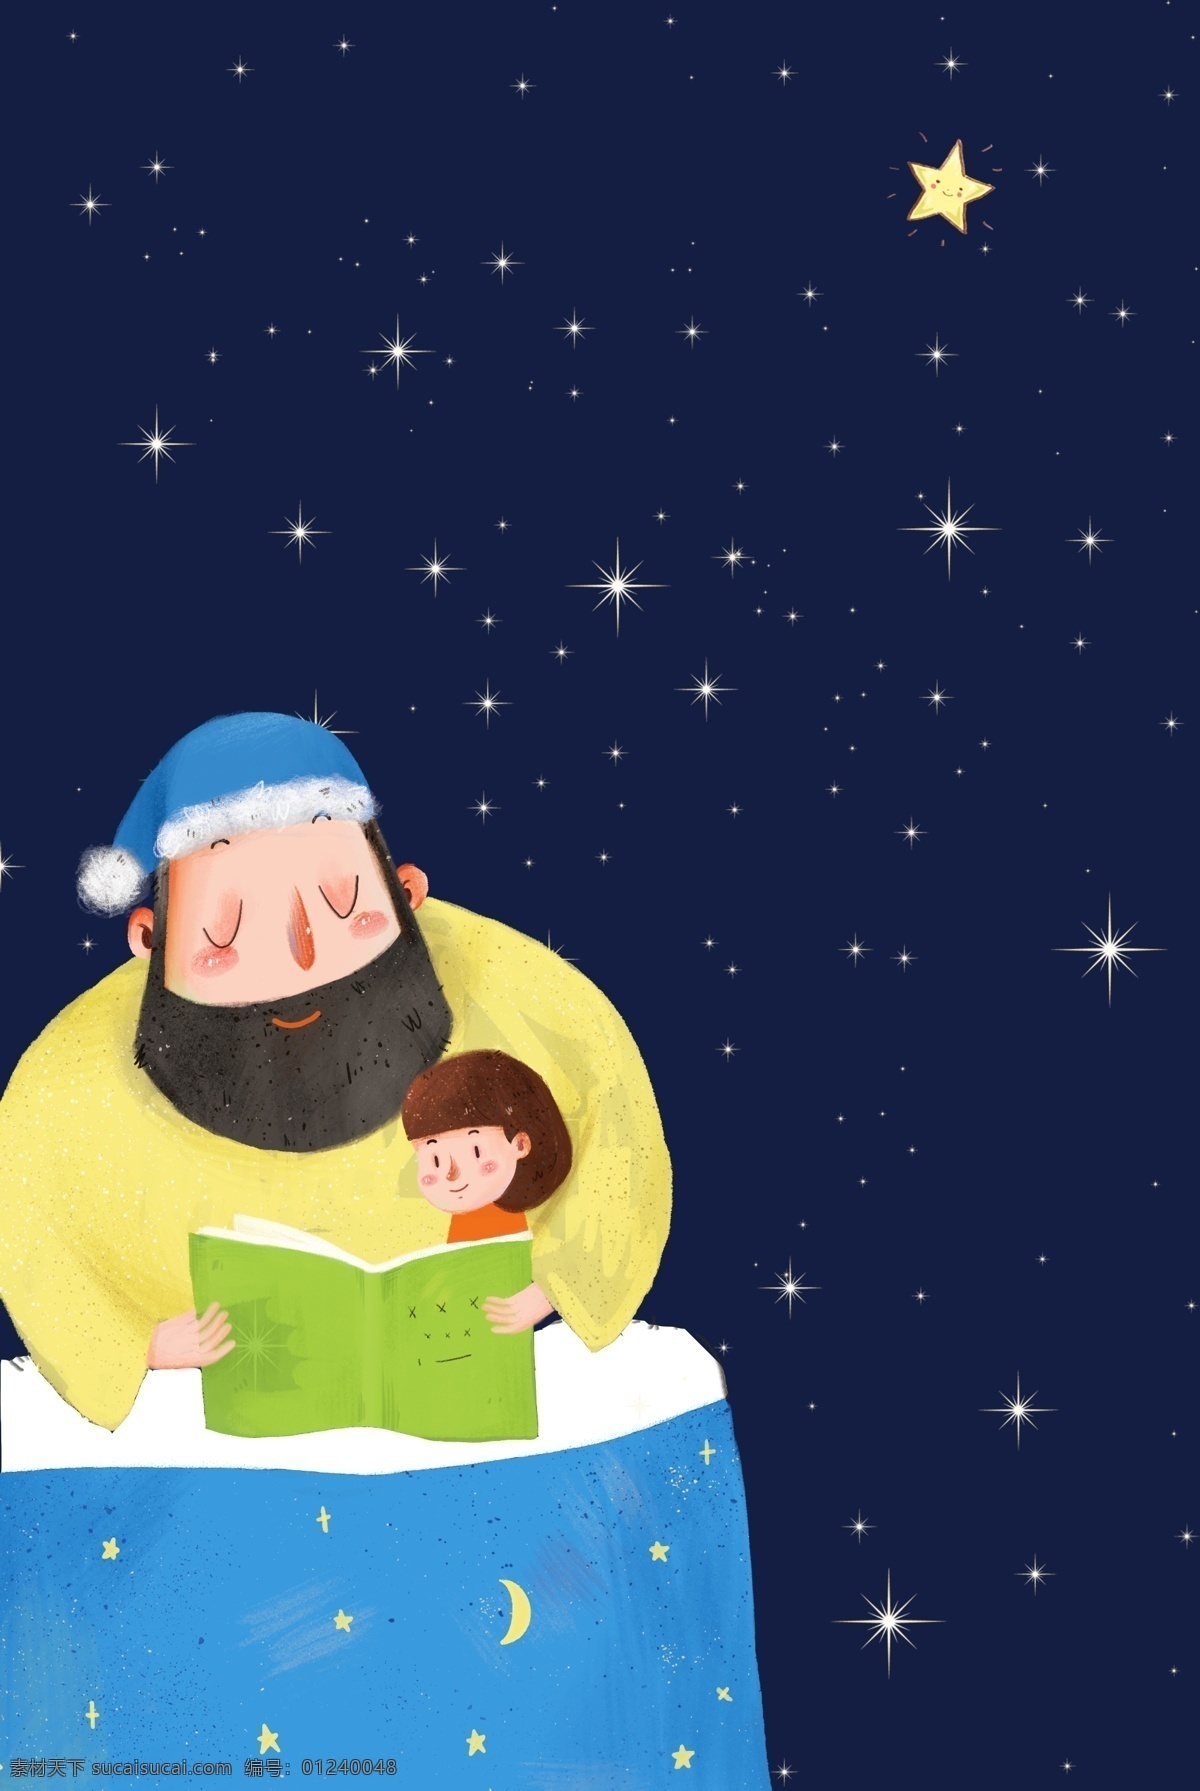 卡通 父亲节 亲子 阅读 背景 父子 亲子阅读 睡前故事 h5 爸爸 讲故事 温馨 家庭